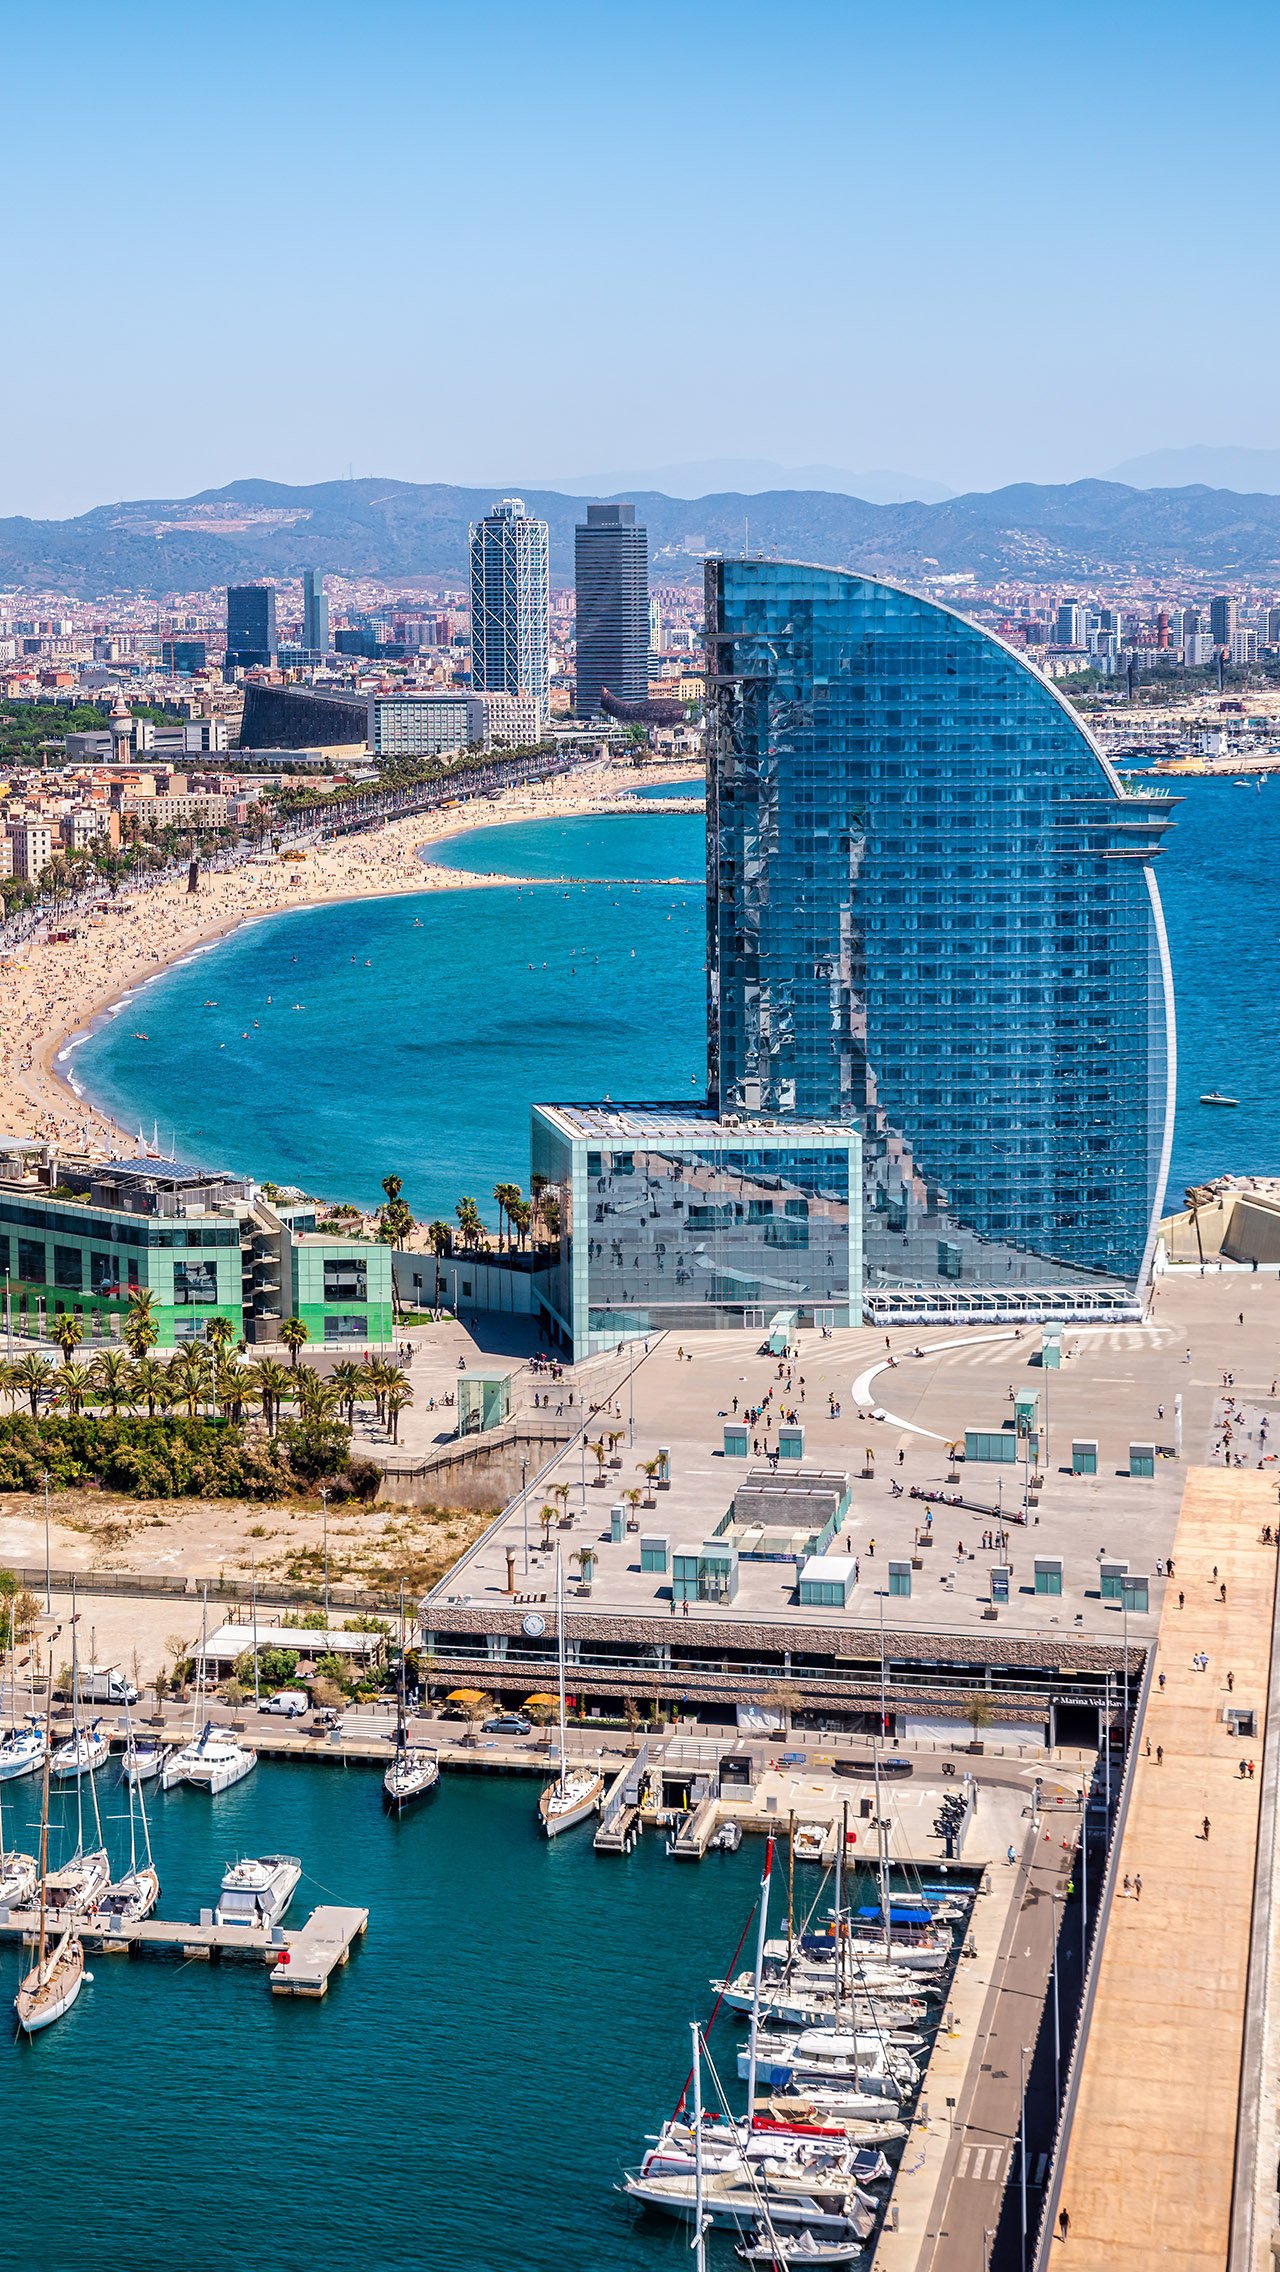 Аргентинец владеет отелями на Ибице и Мальорке, которые объединены в Majestic Hotel Group. Игрок потратил € 30 млн на покупку здания в Барселоне в 2017 году.